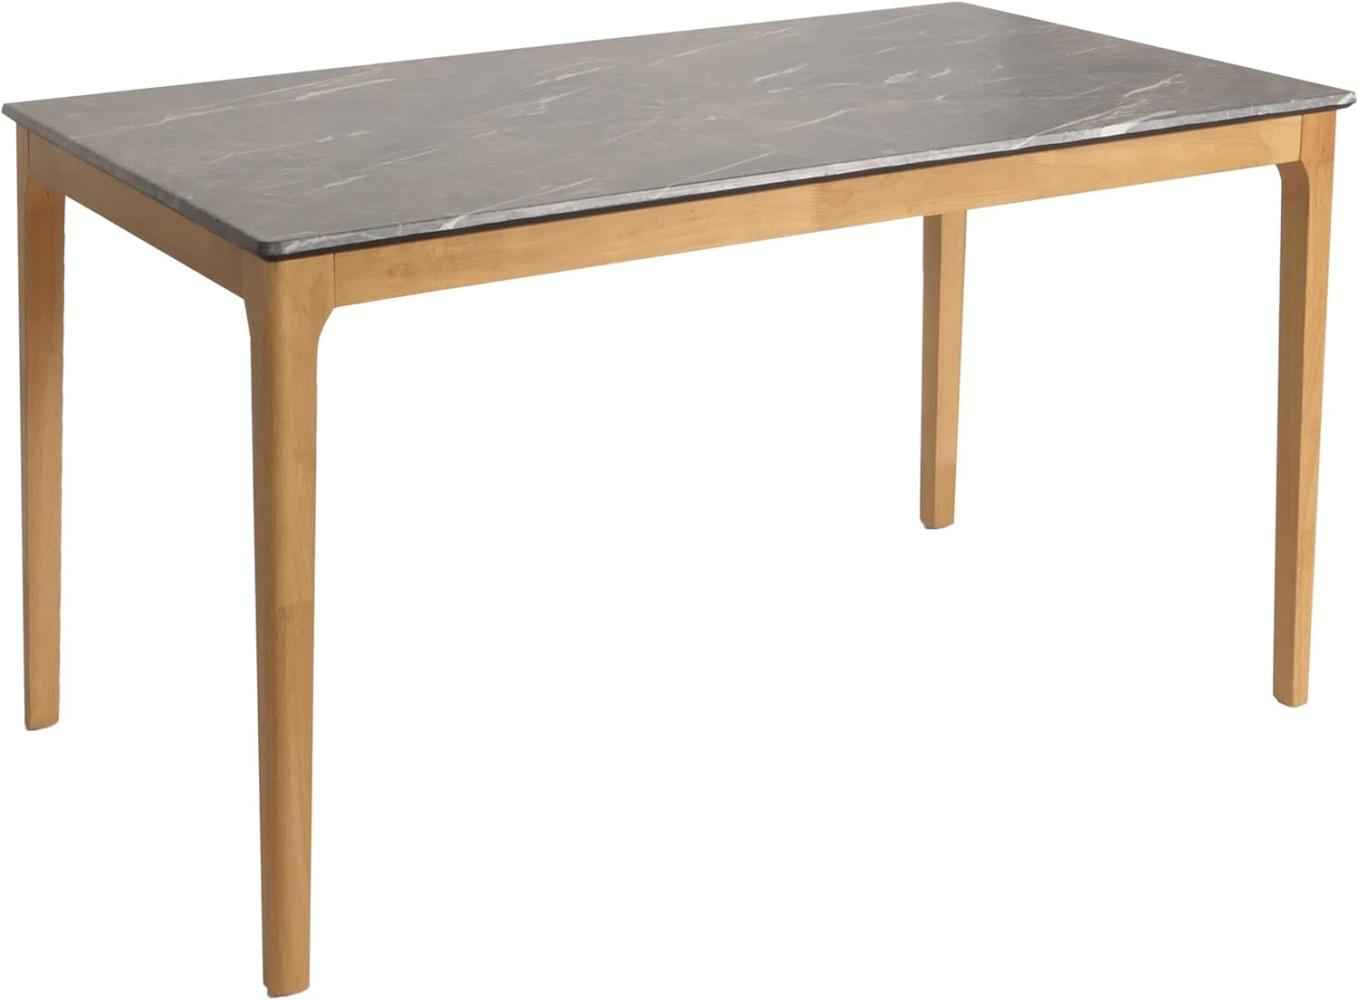 Esszimmertisch HWC-M55, Tisch Esstisch, Massiv-Holz HDF Laminat Melamin 135x80cm, Marmor/Stein-Optik, helle Beine Bild 1